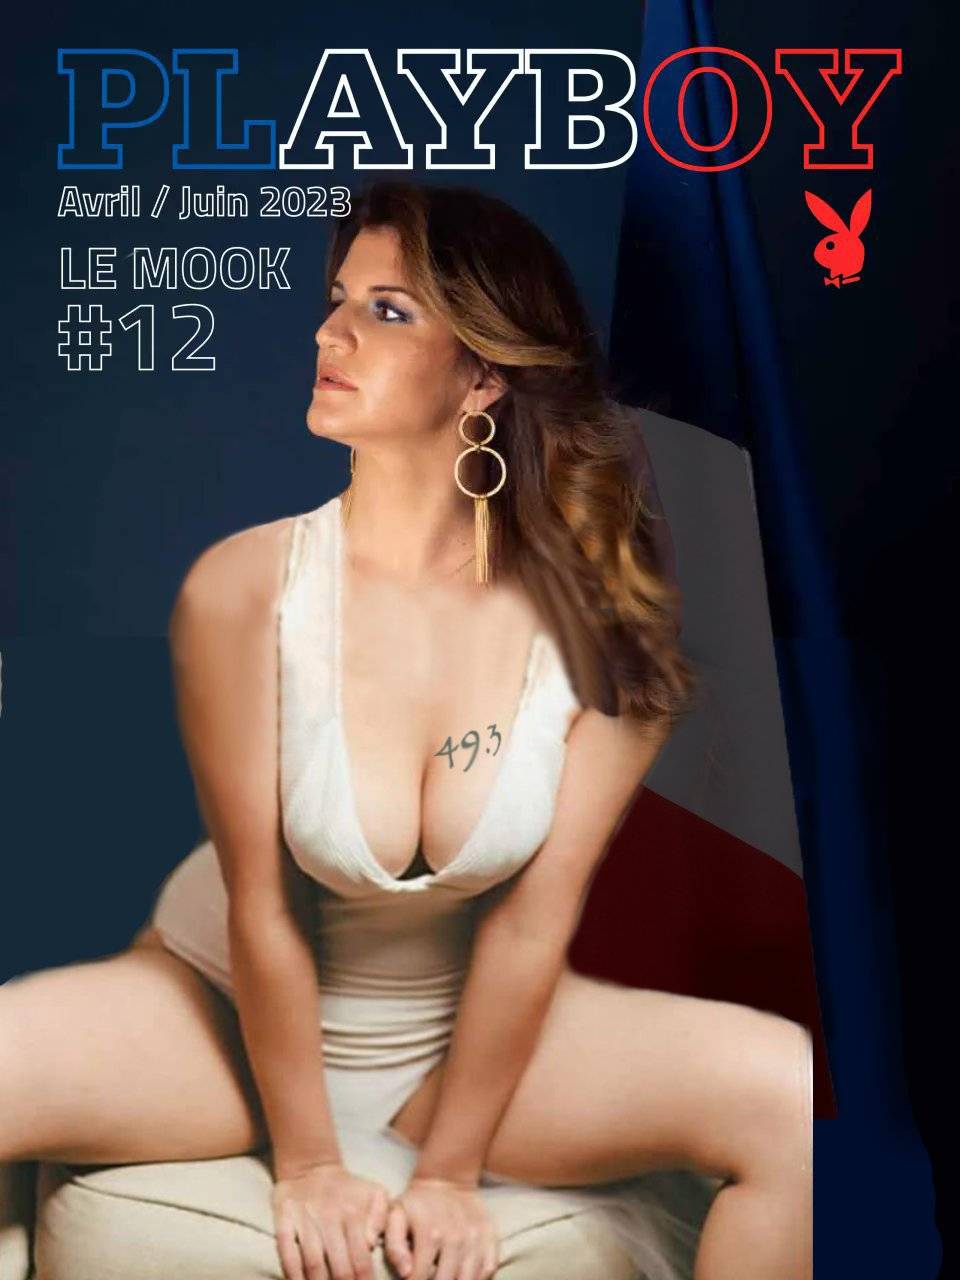 Fransız bakanın Playboy dergisine verdiği pozlar ülkeyi karıştırdı